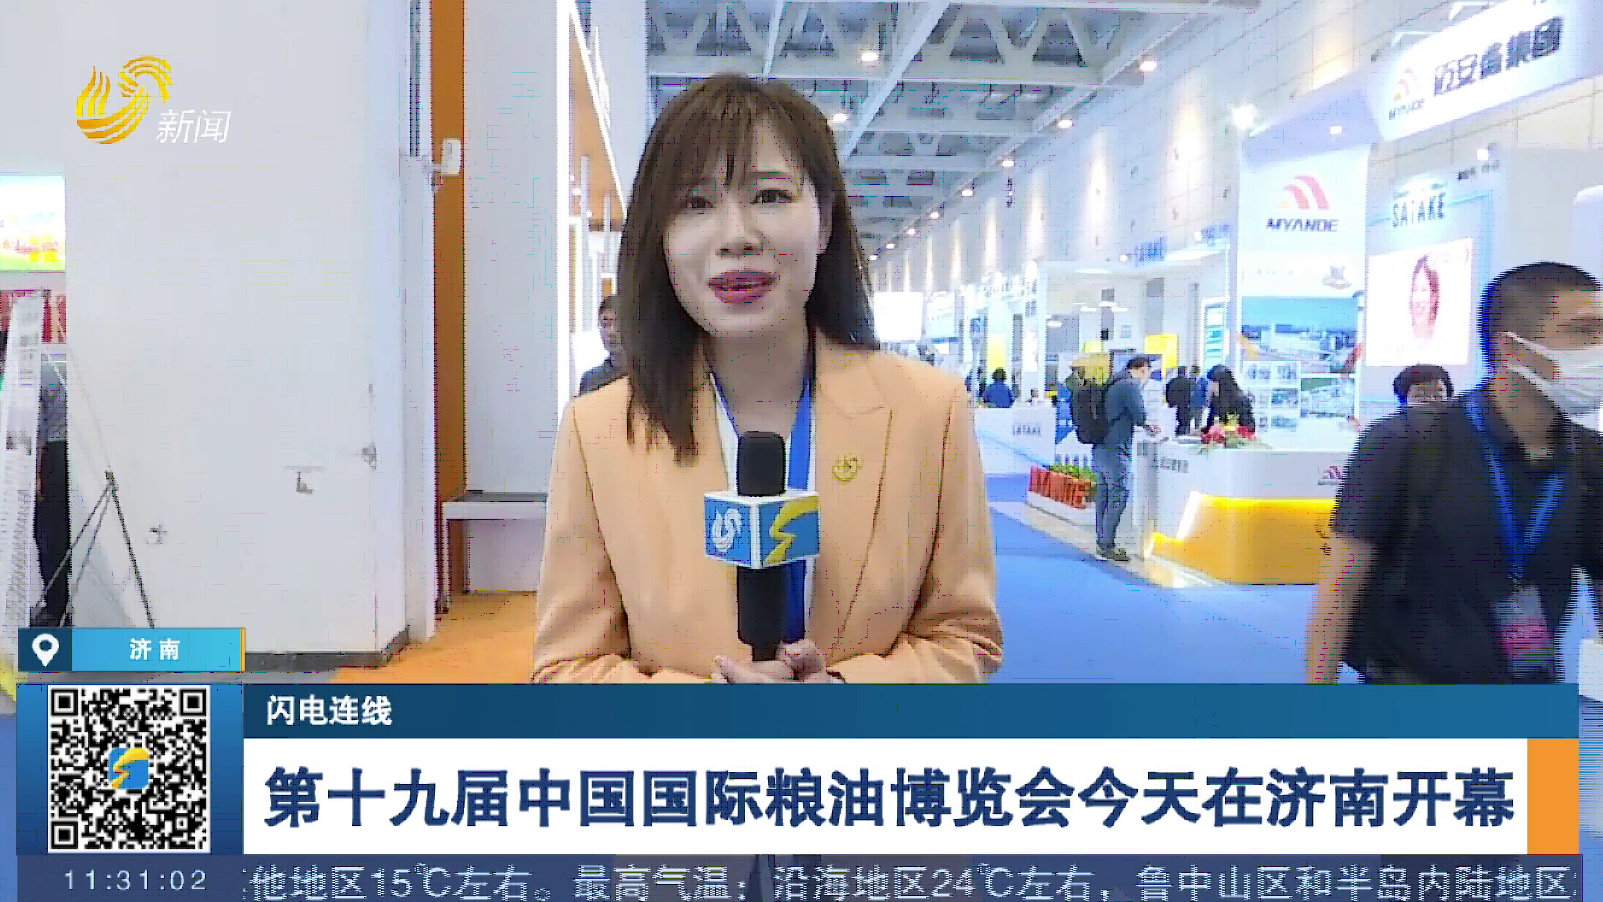 【闪电连线】第十九届中国国际粮油博览会今天在济南开幕